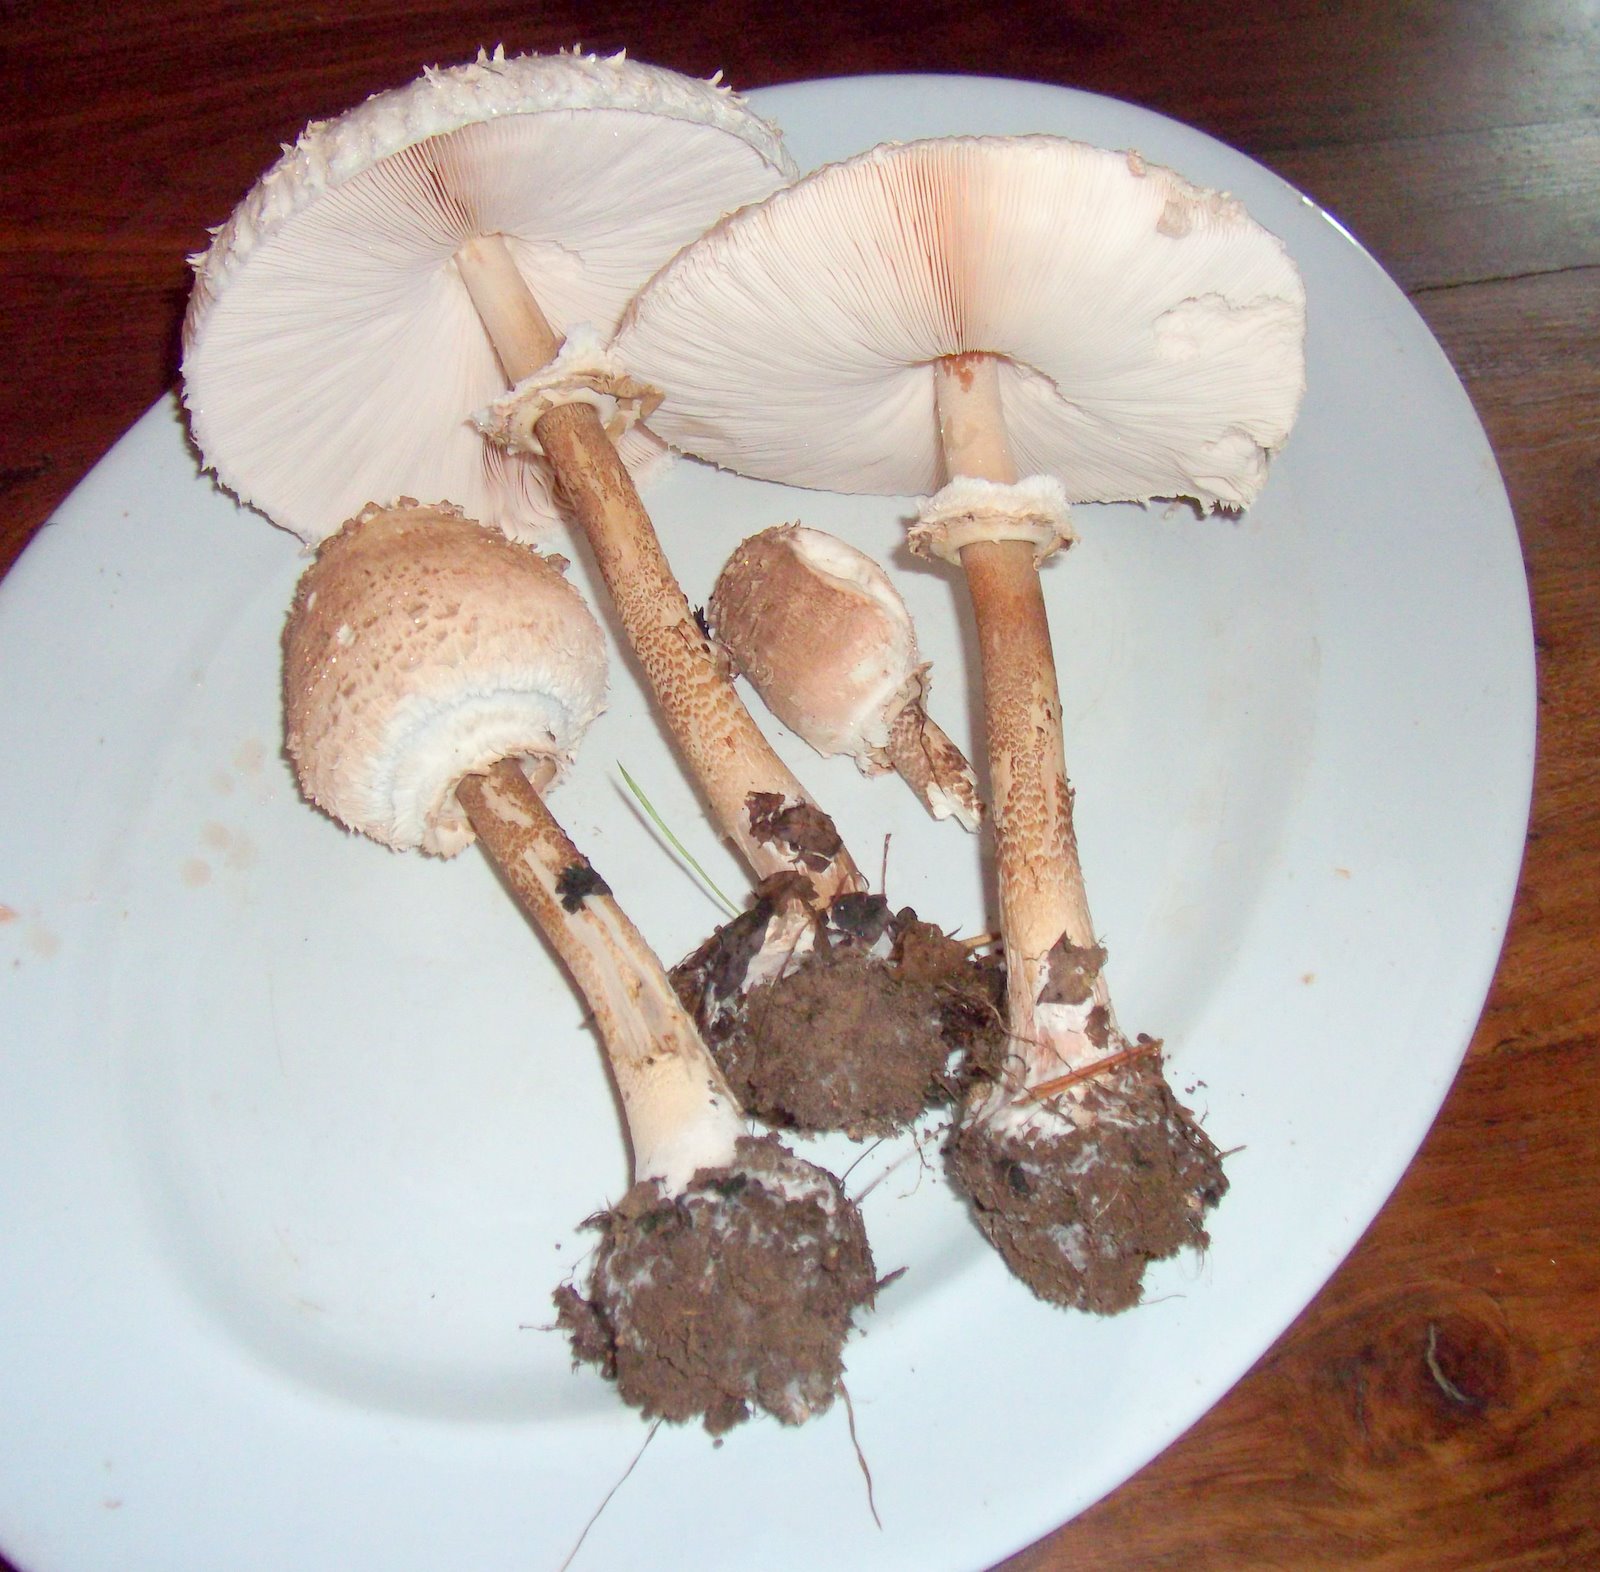 Parasol Mushroom Identification